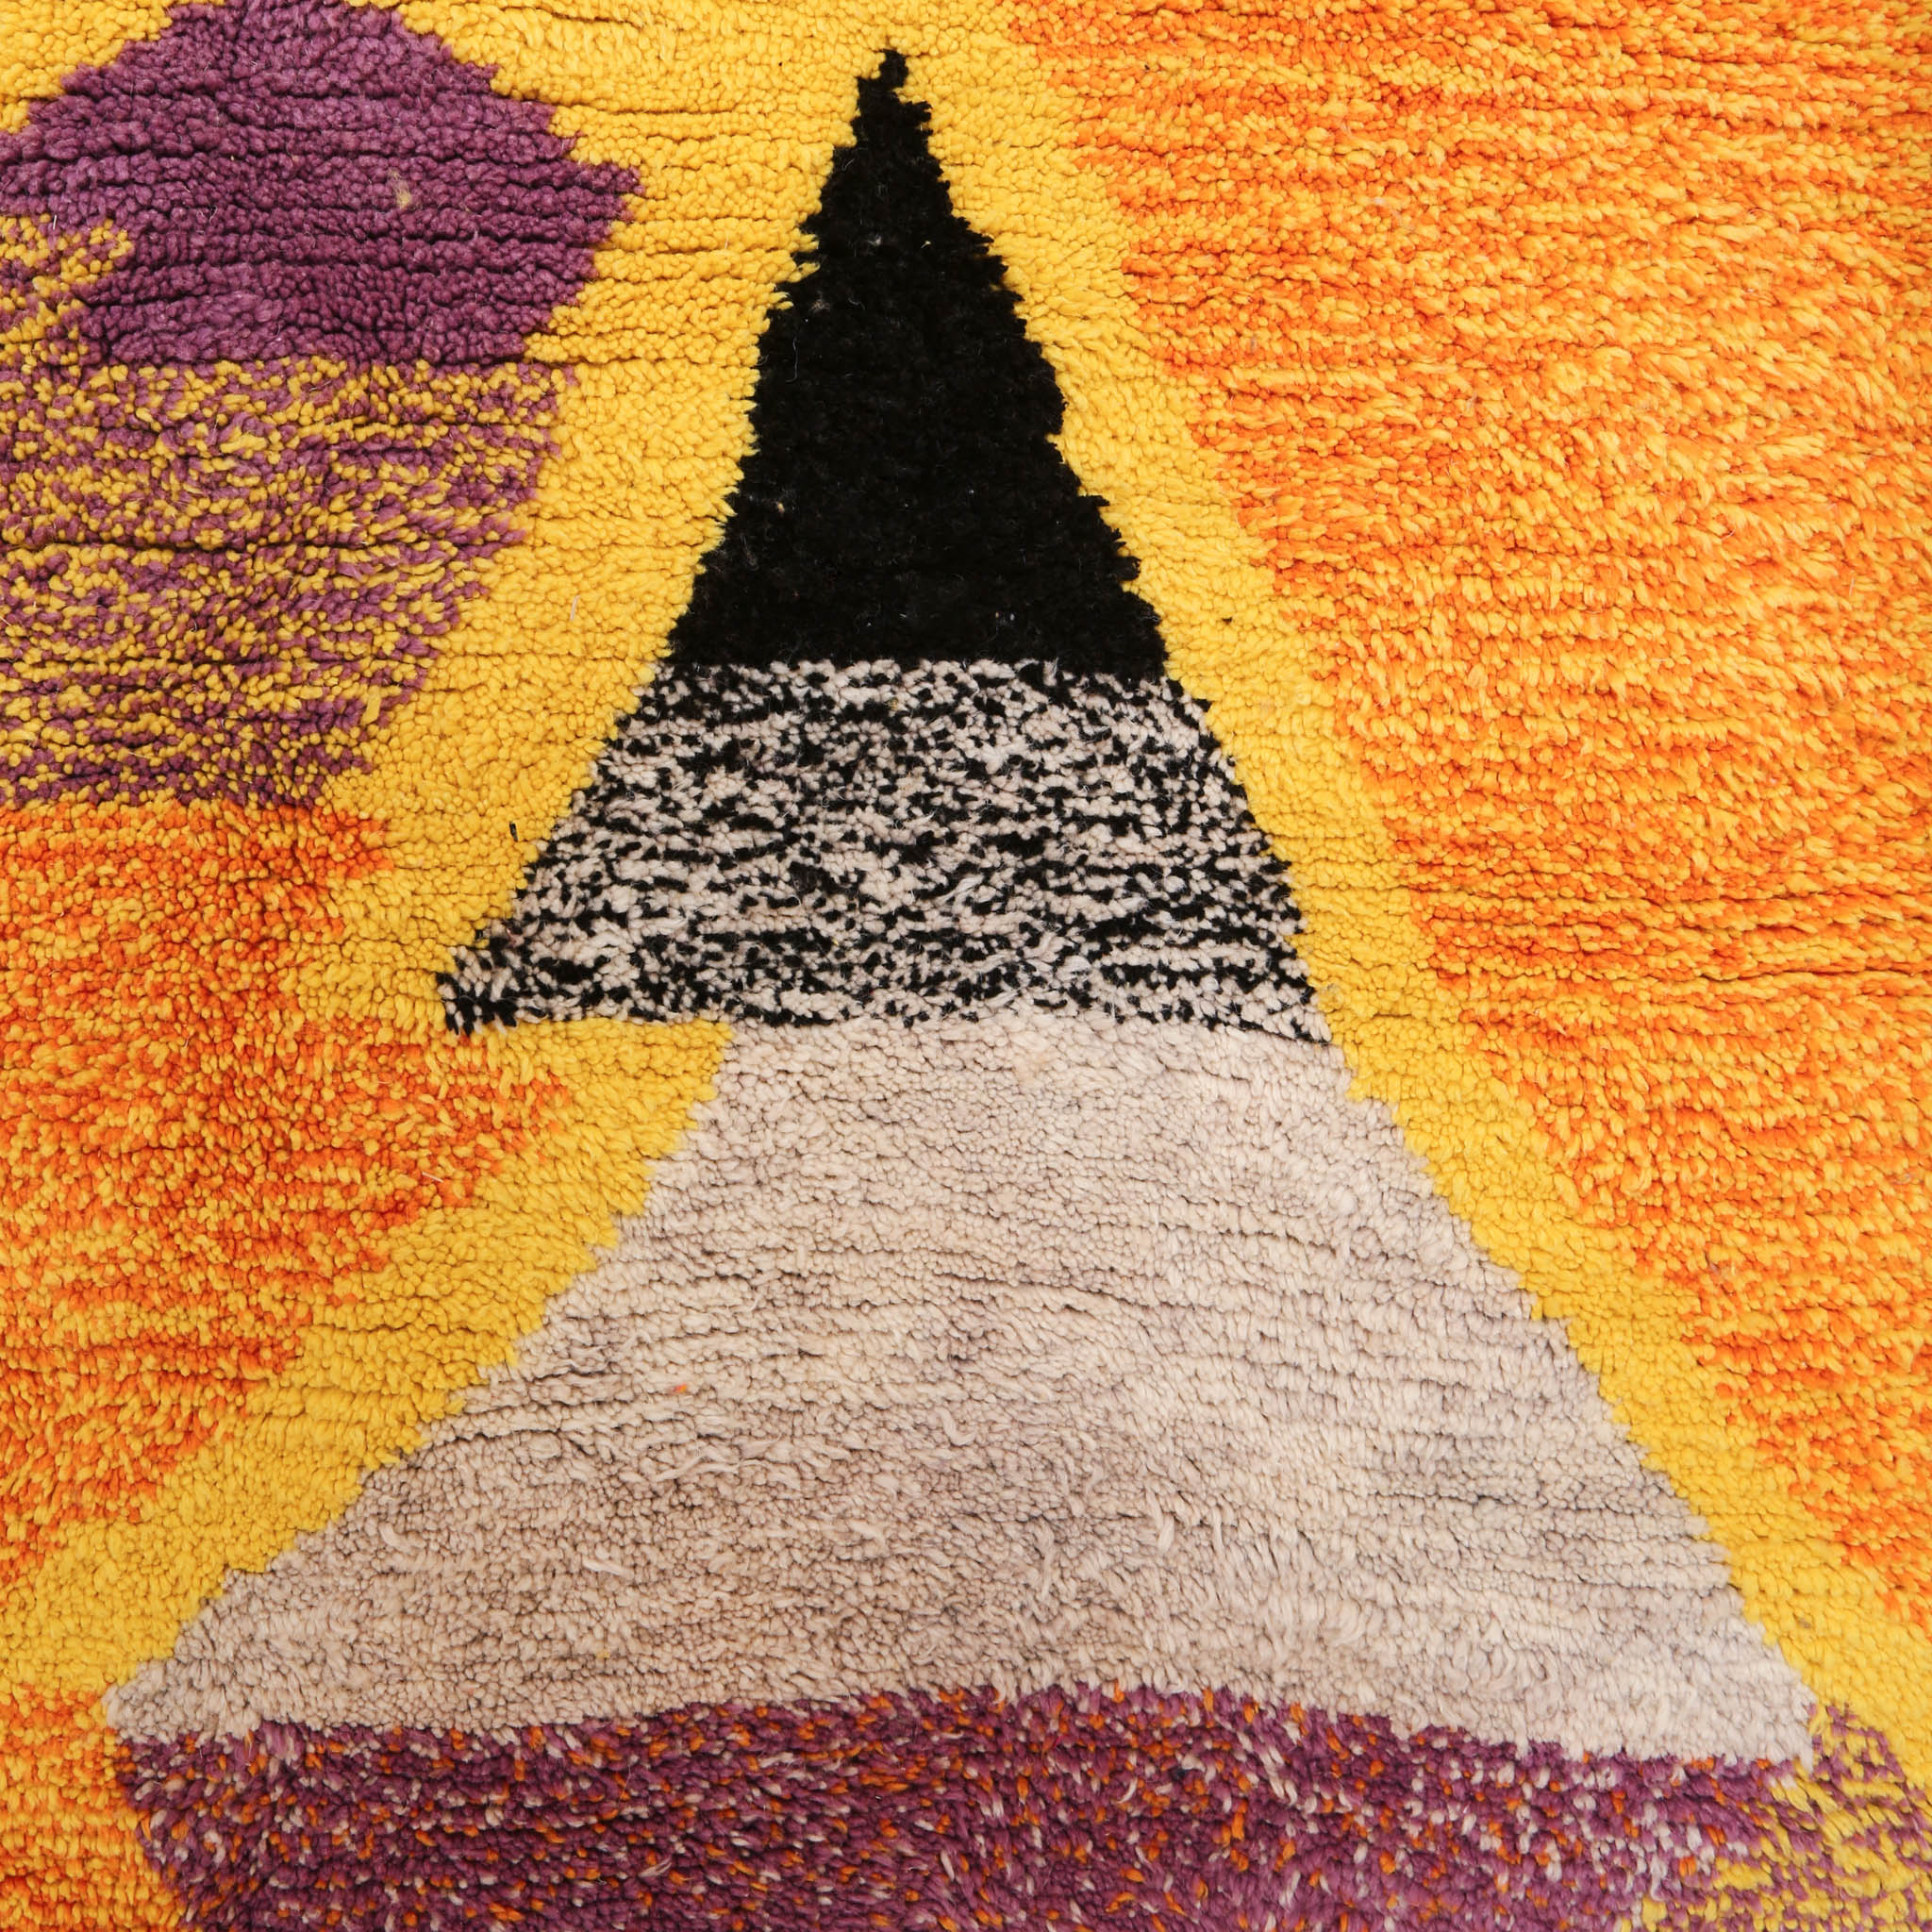 dettaglio di una figura astratta di un tappeto azilal